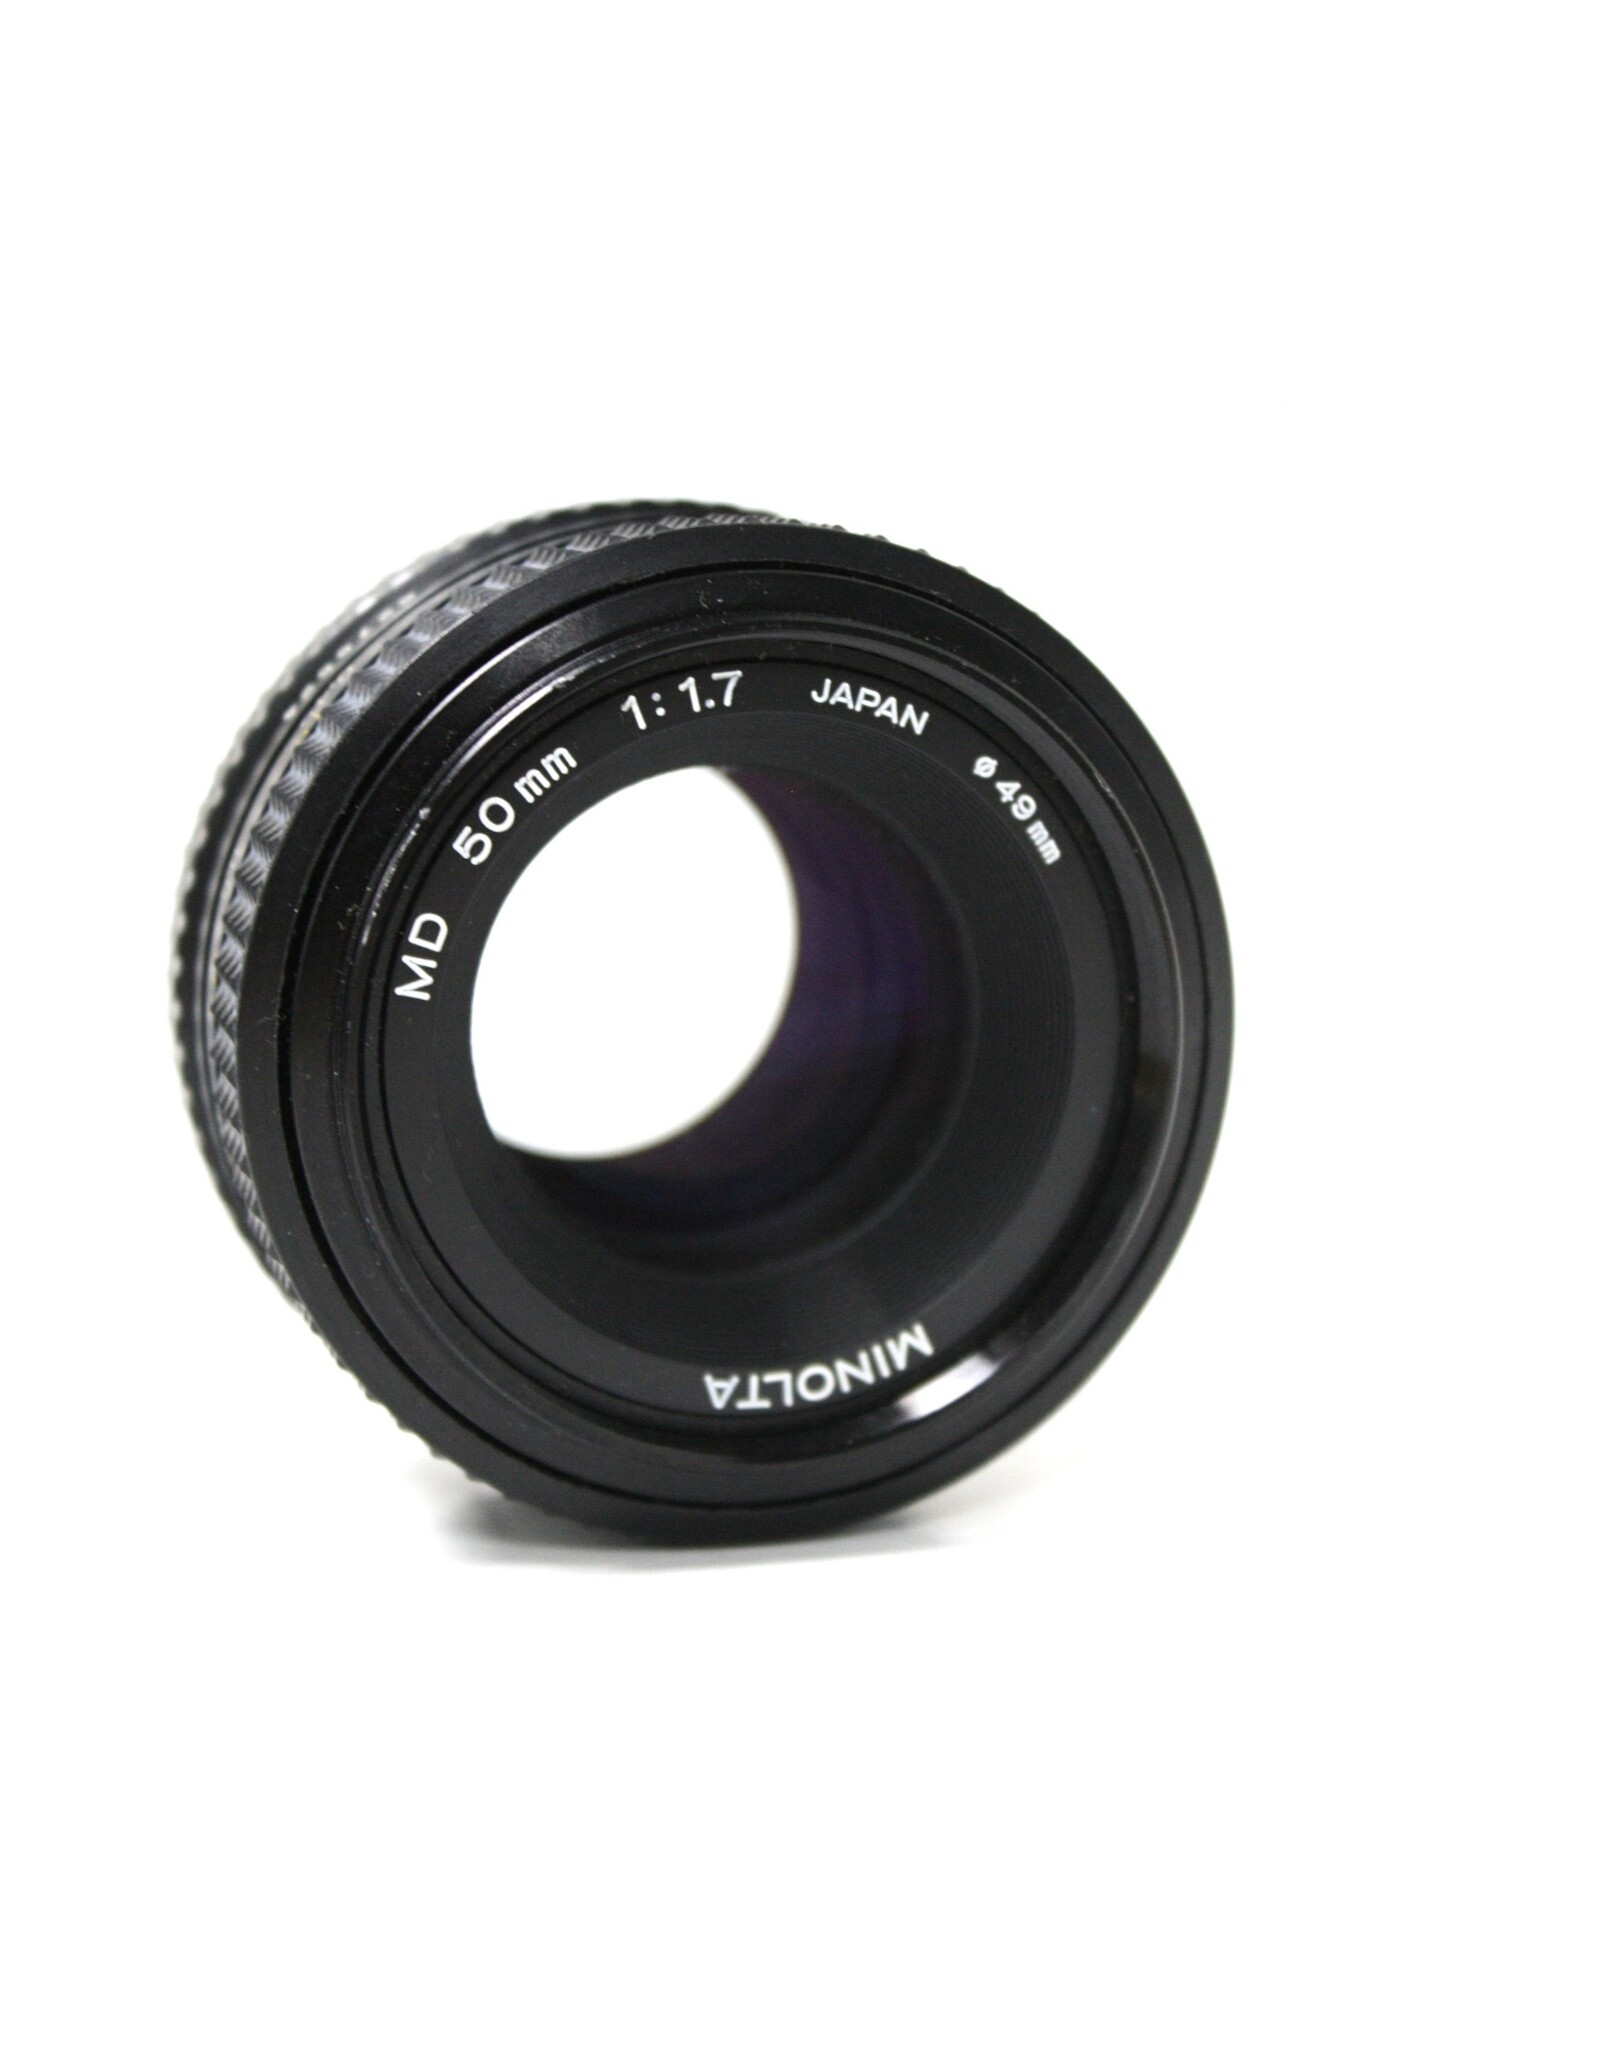 Minolta 50mm MD Lens